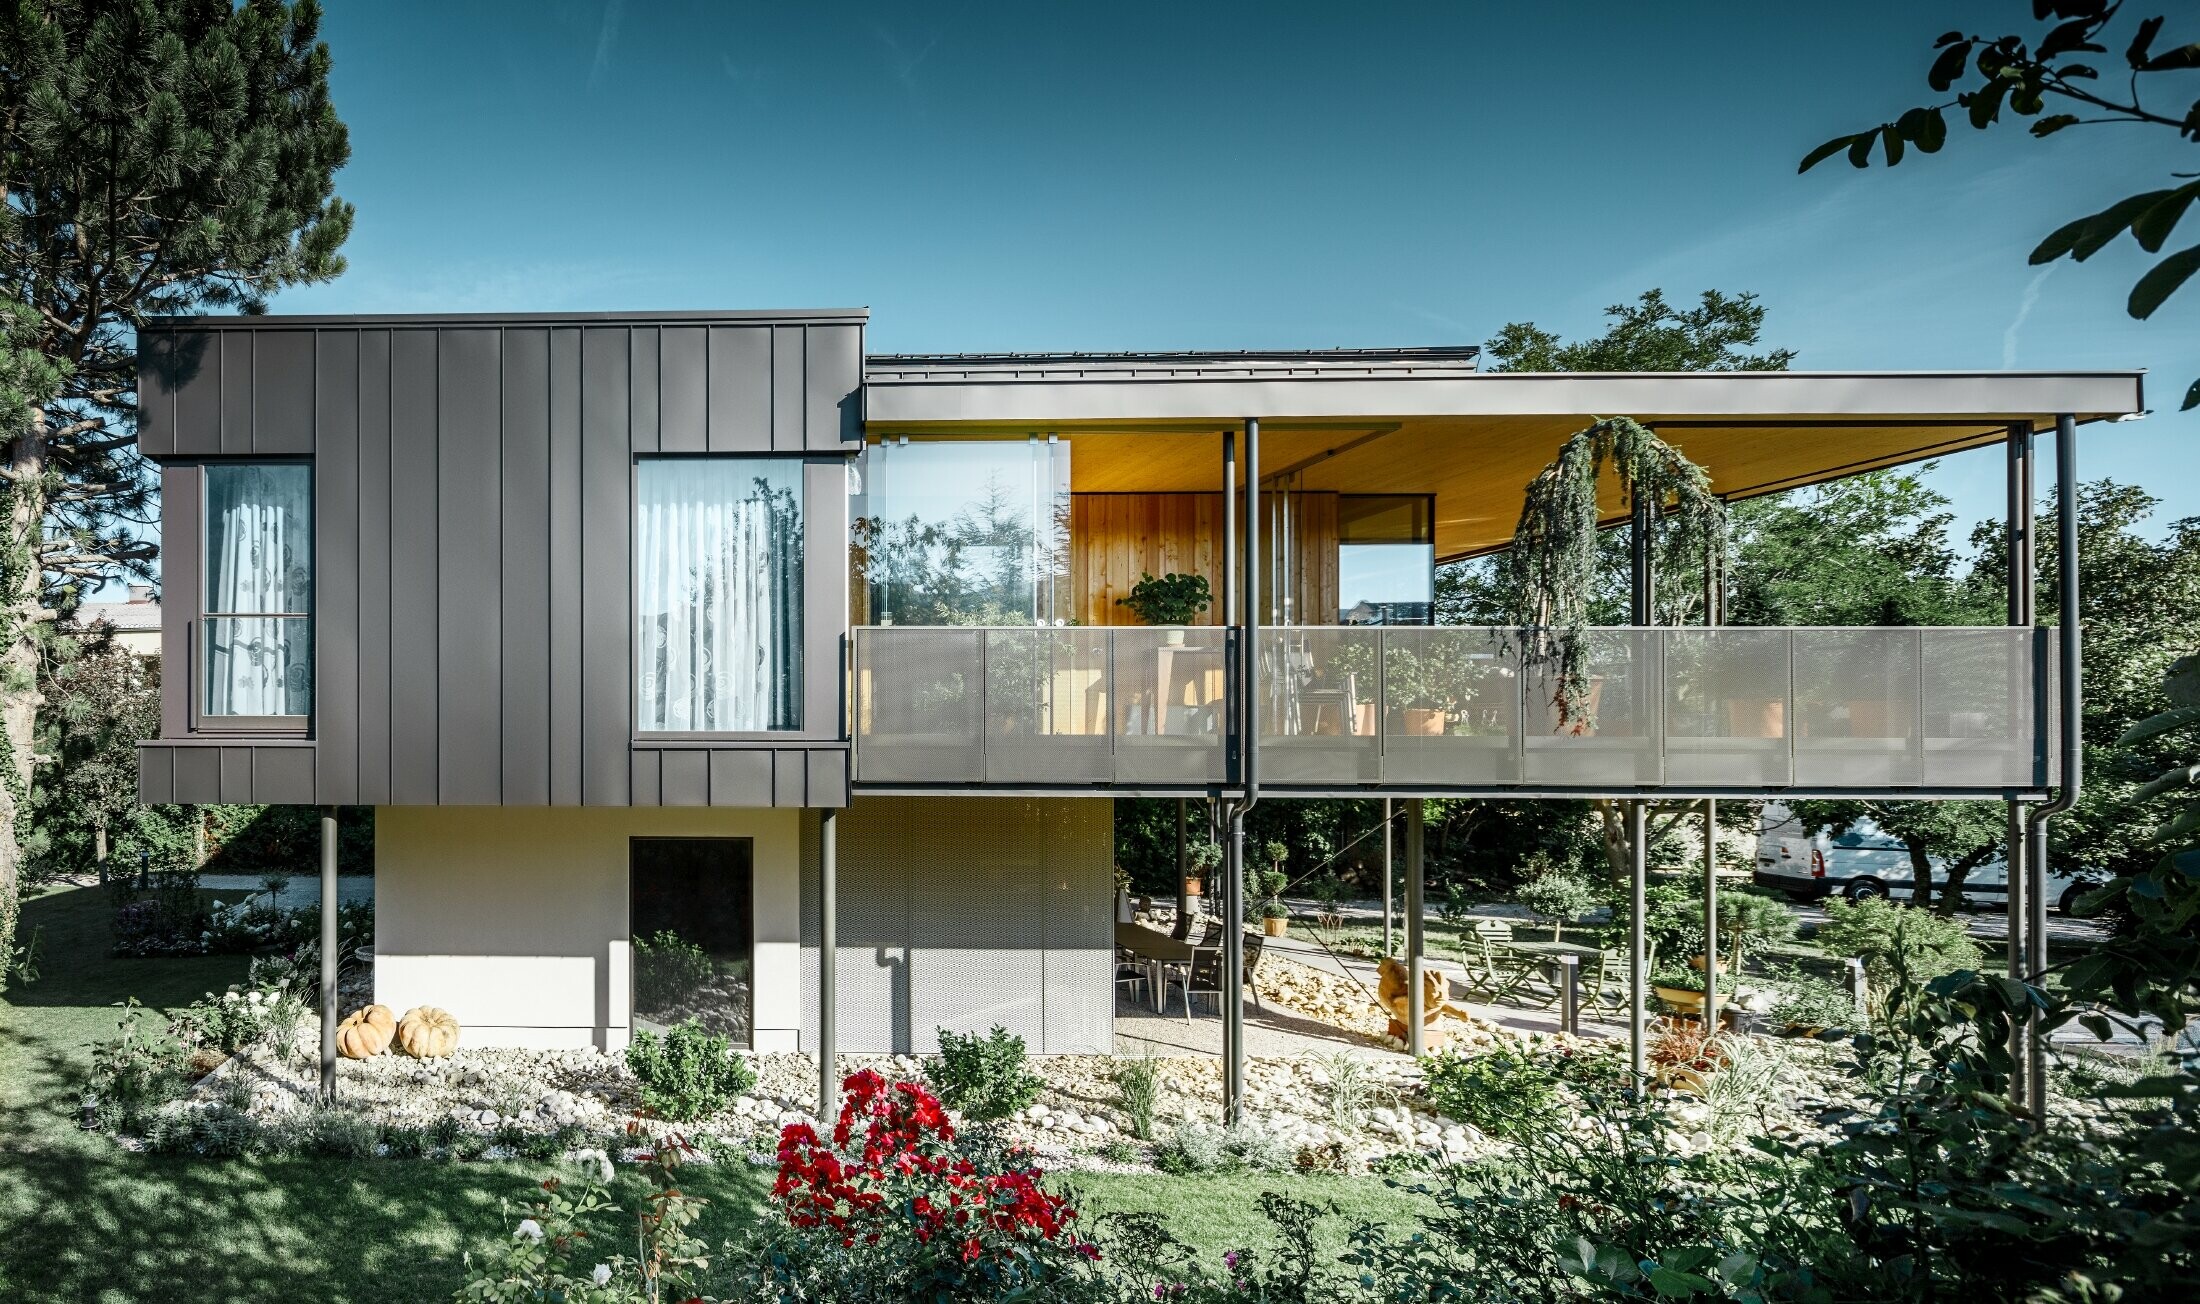 Moderný rodinný dom, podobný drevenému domu obklopenému veľkou záhradou s množstvom stromov, s decentnou uhlovou stojatou drážkou v čiernošedej farbe od fy PREFA